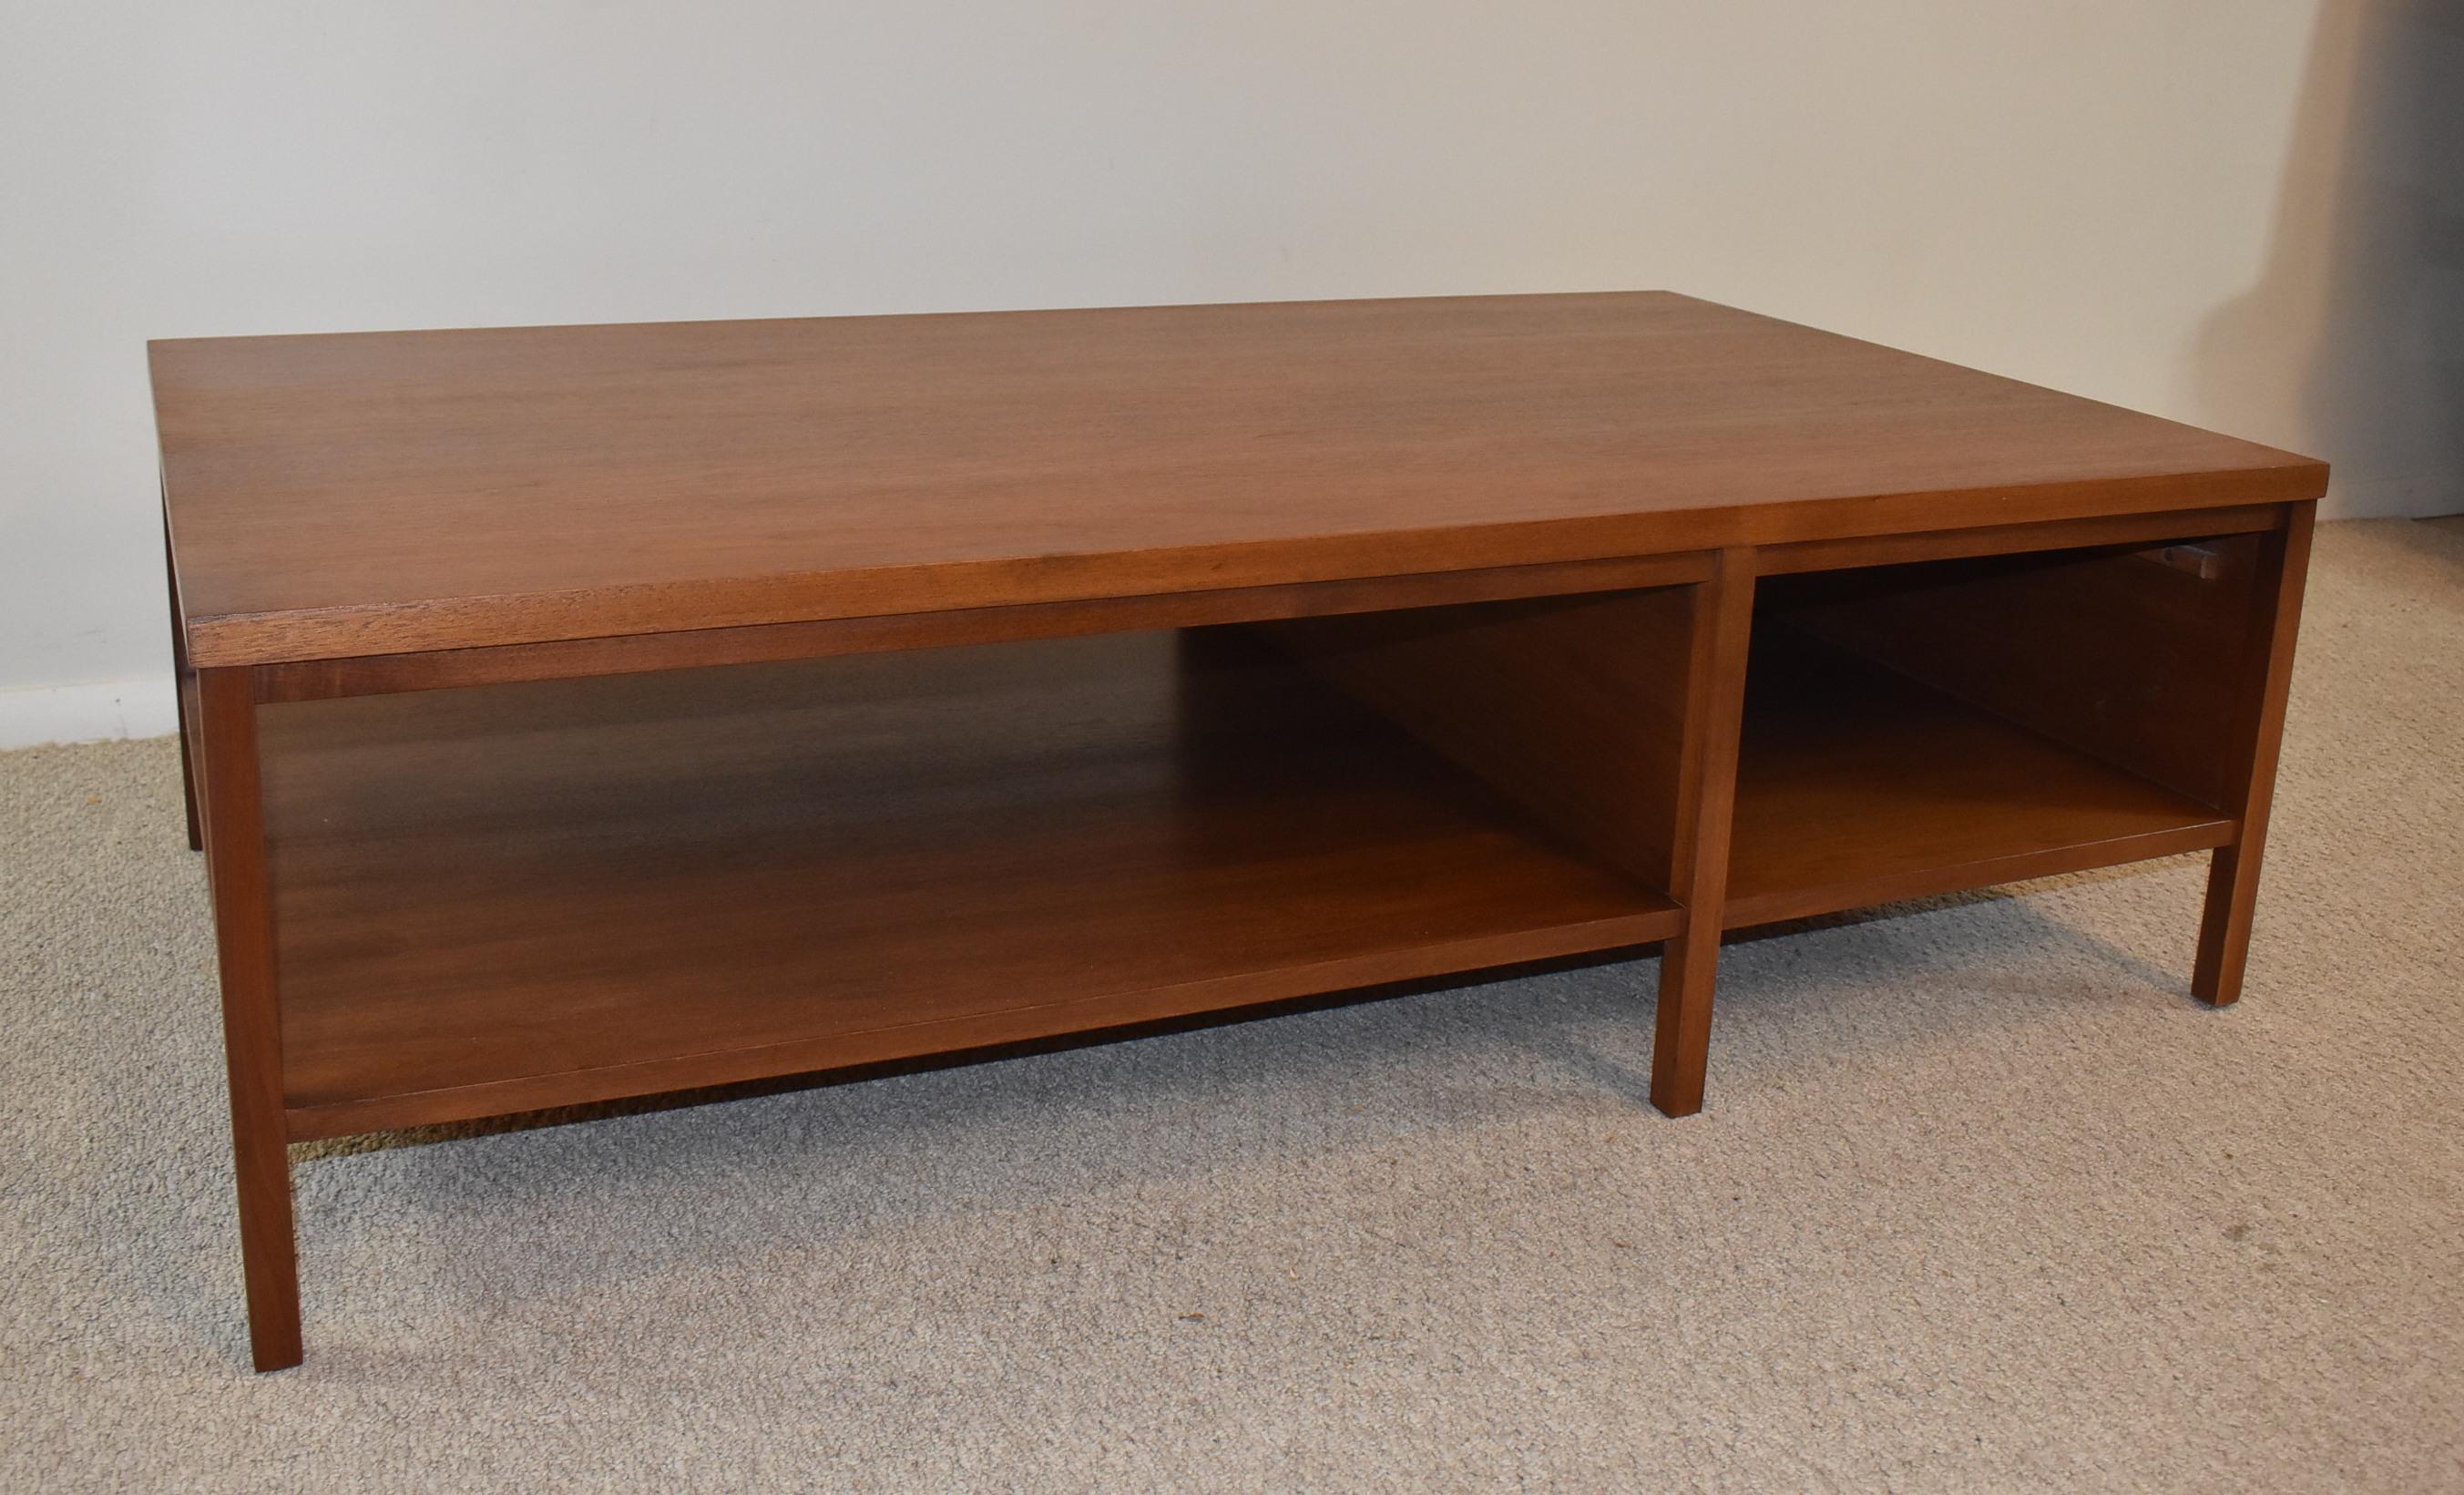 Paul McCobb Planner Group Couchtisch für Calvin Furniture, Co. Couchtisch aus Nussbaumholz mit einer einzigen Schublade und einer kompletten unteren Ablage. Ausgezeichneter Zustand. 54